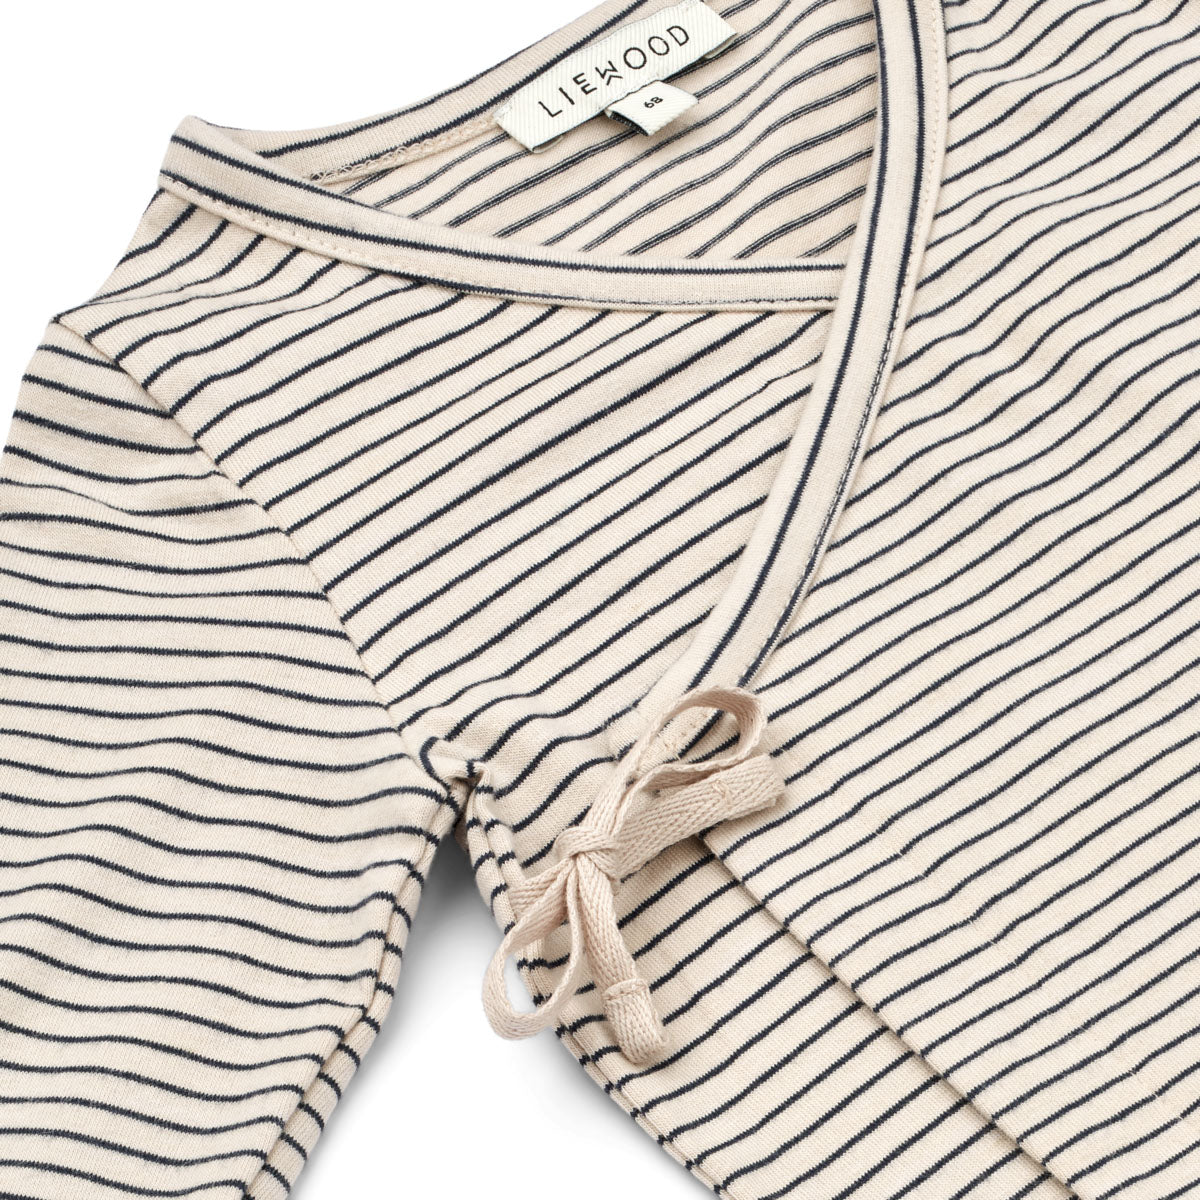 Voeg een vleugje klassiek toe aan de outfit van je kindje met het tadeo wikkelvestje in stripe sandy/classic navy van Liewood. Eenvoudig aan- en uit te trekken, gestreepte  zachte jersey stof. VanZus